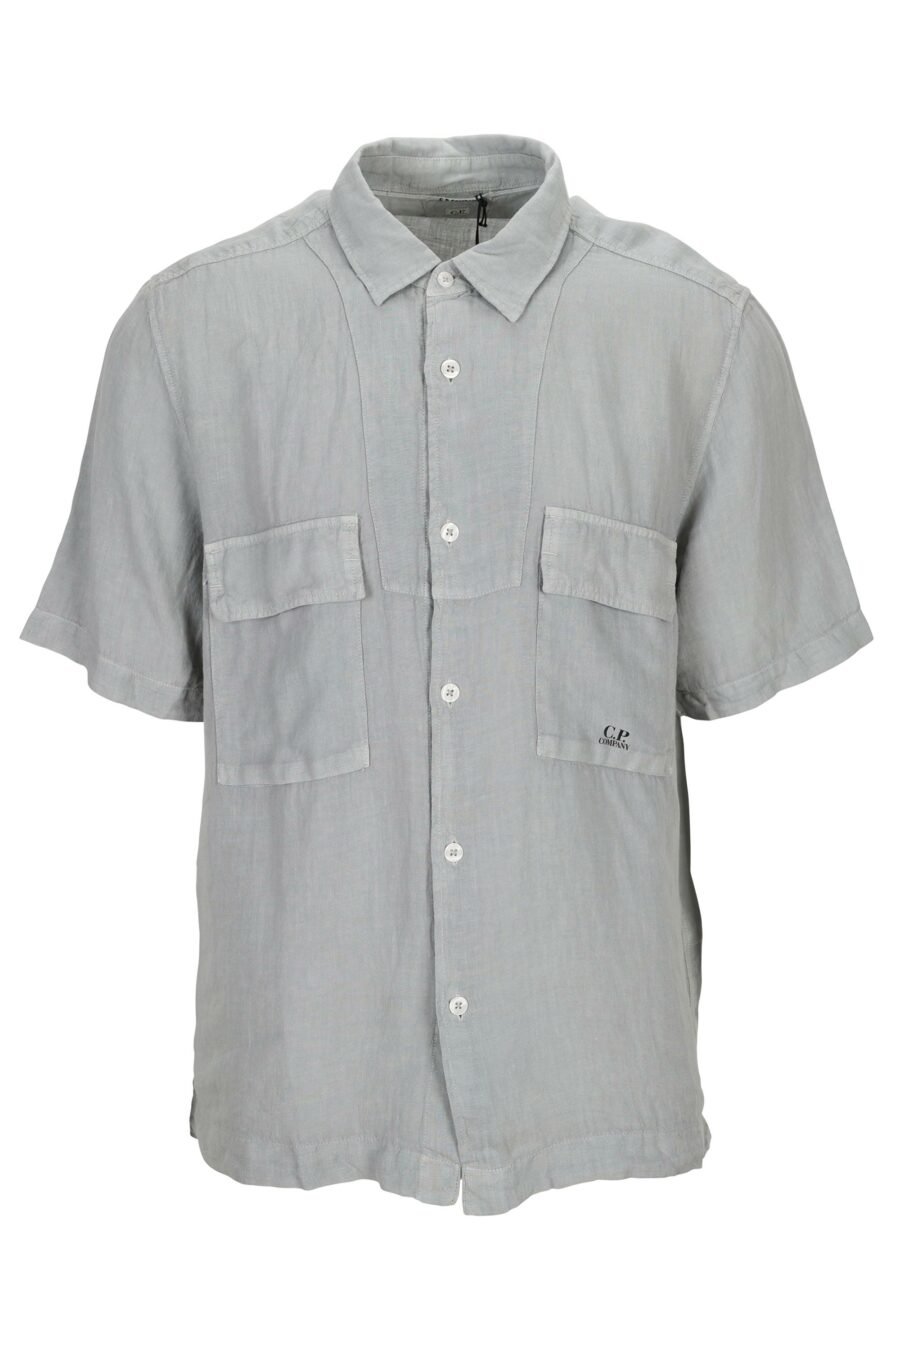 Camisa manga corta gris con botones y bolsillos con minilogo - 7620943668773